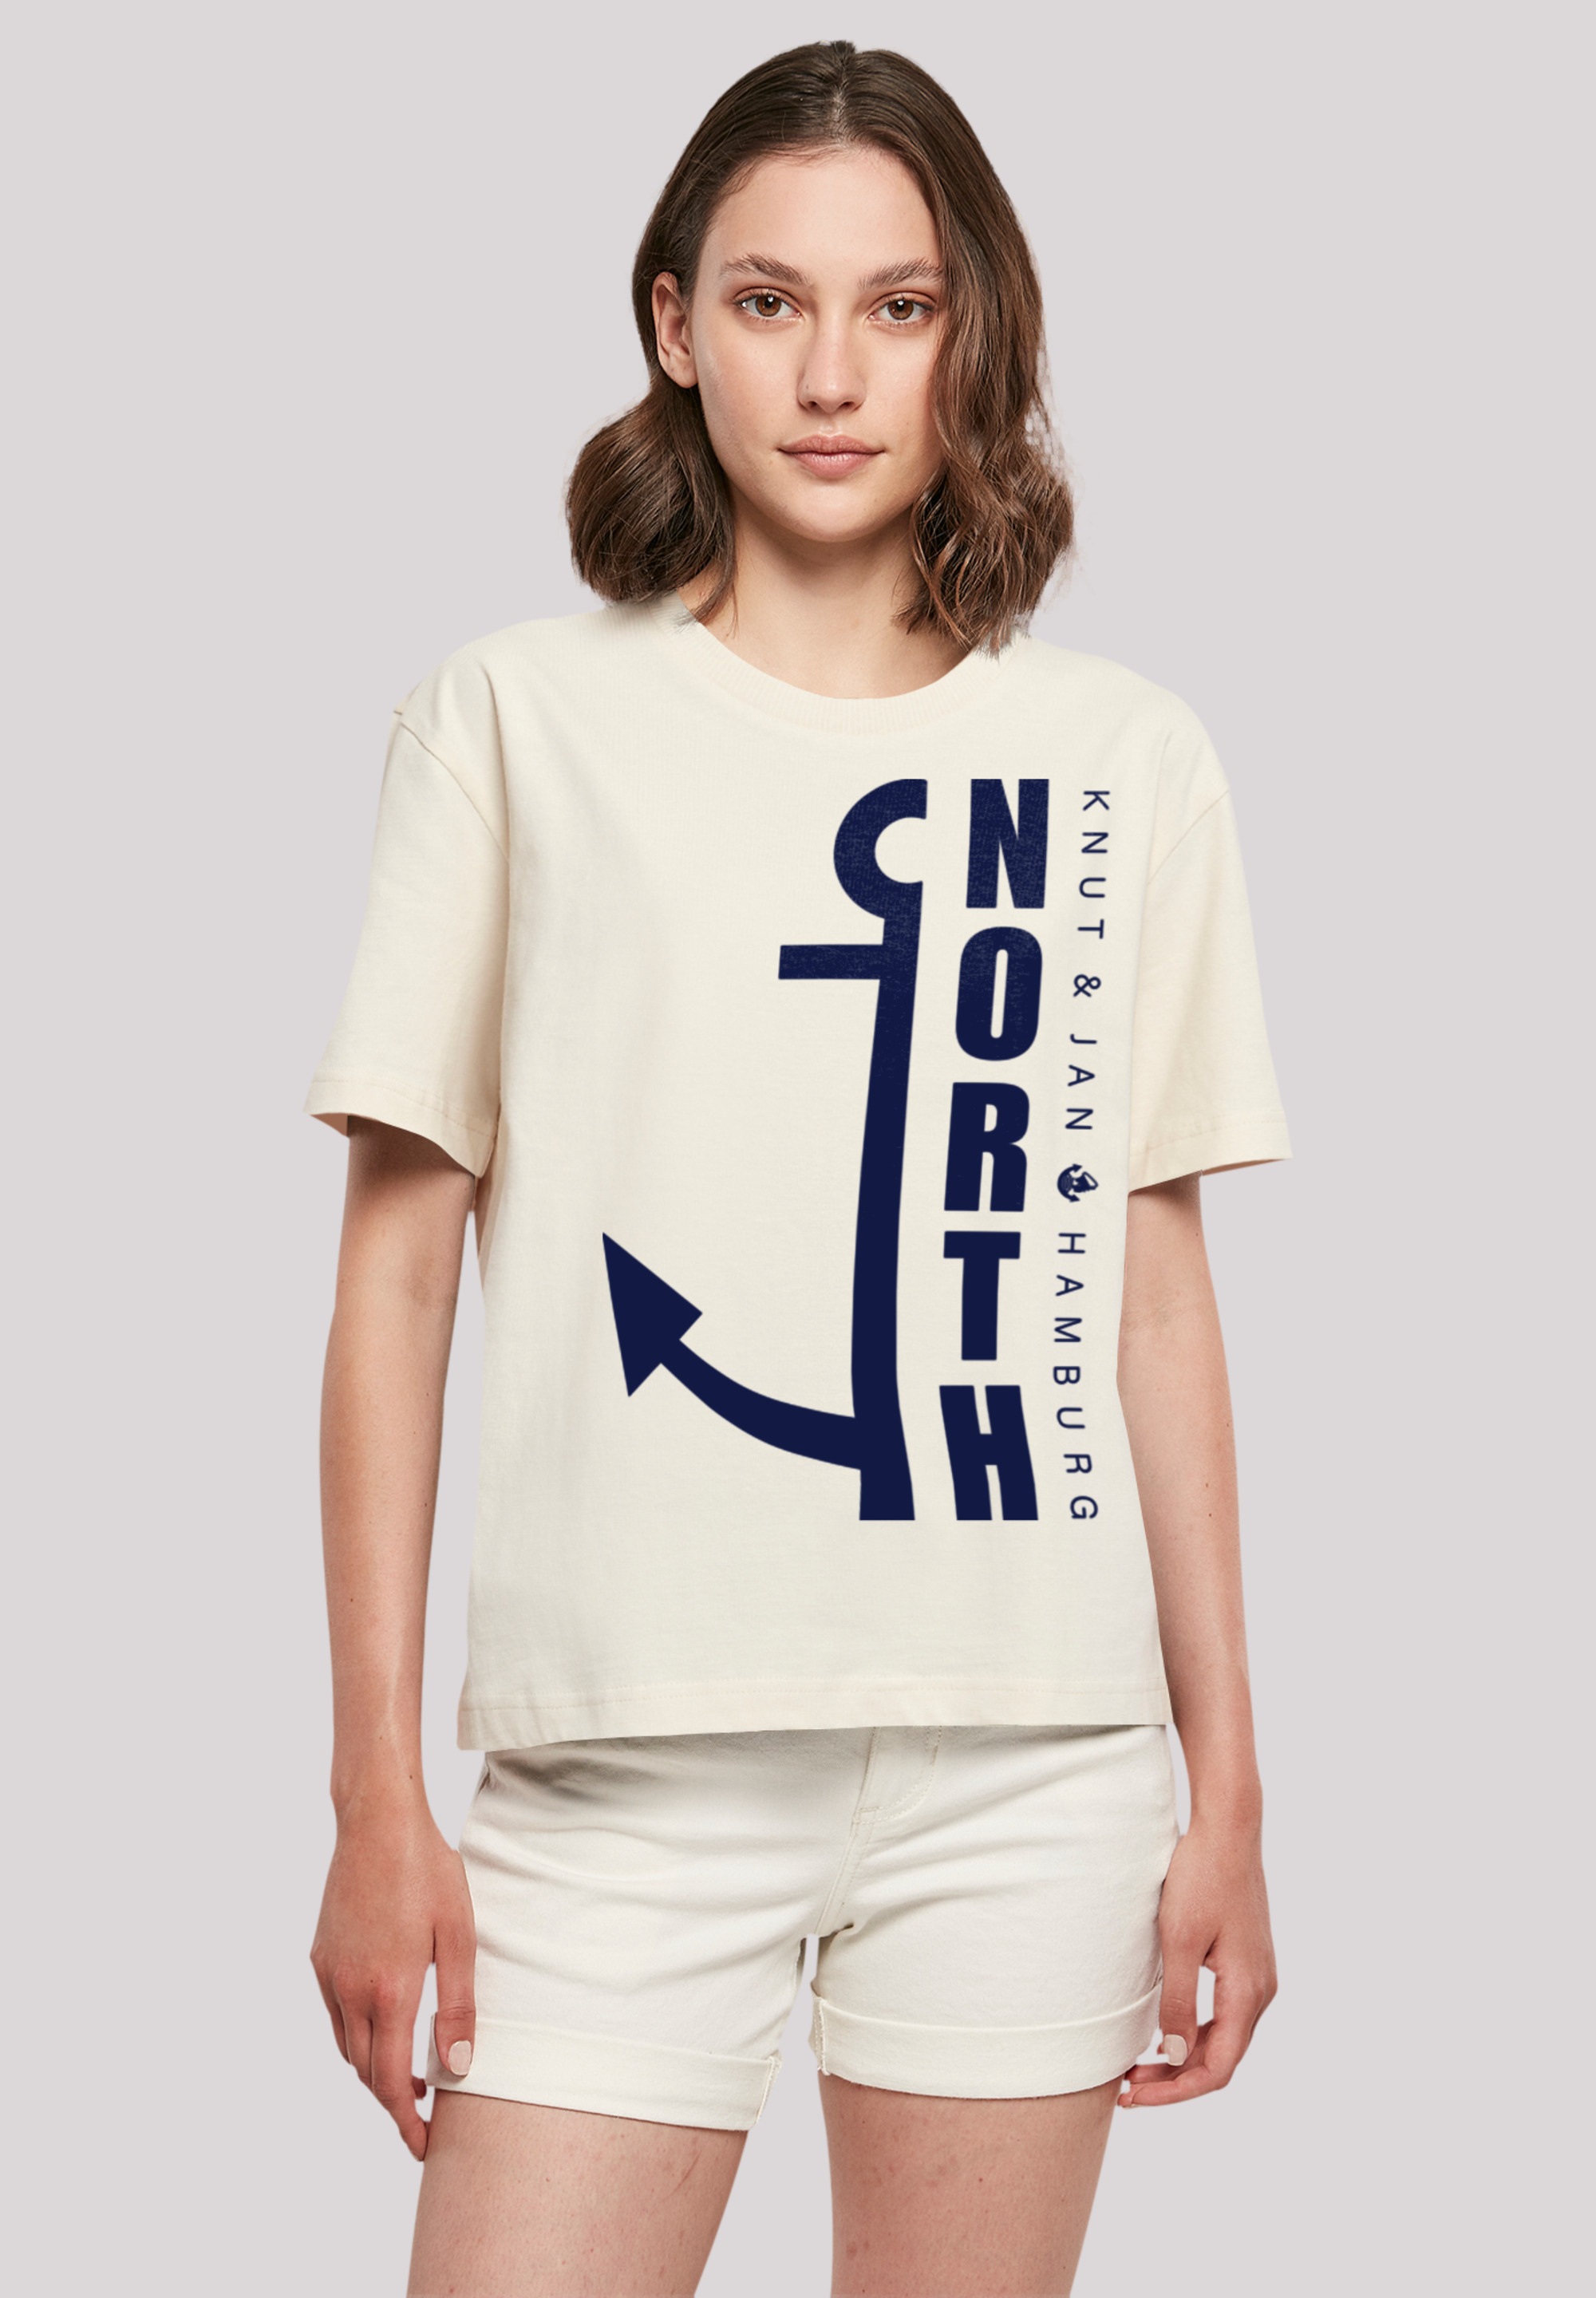 Print | T-Shirt Anker«, »North für F4NT4STIC BAUR kaufen